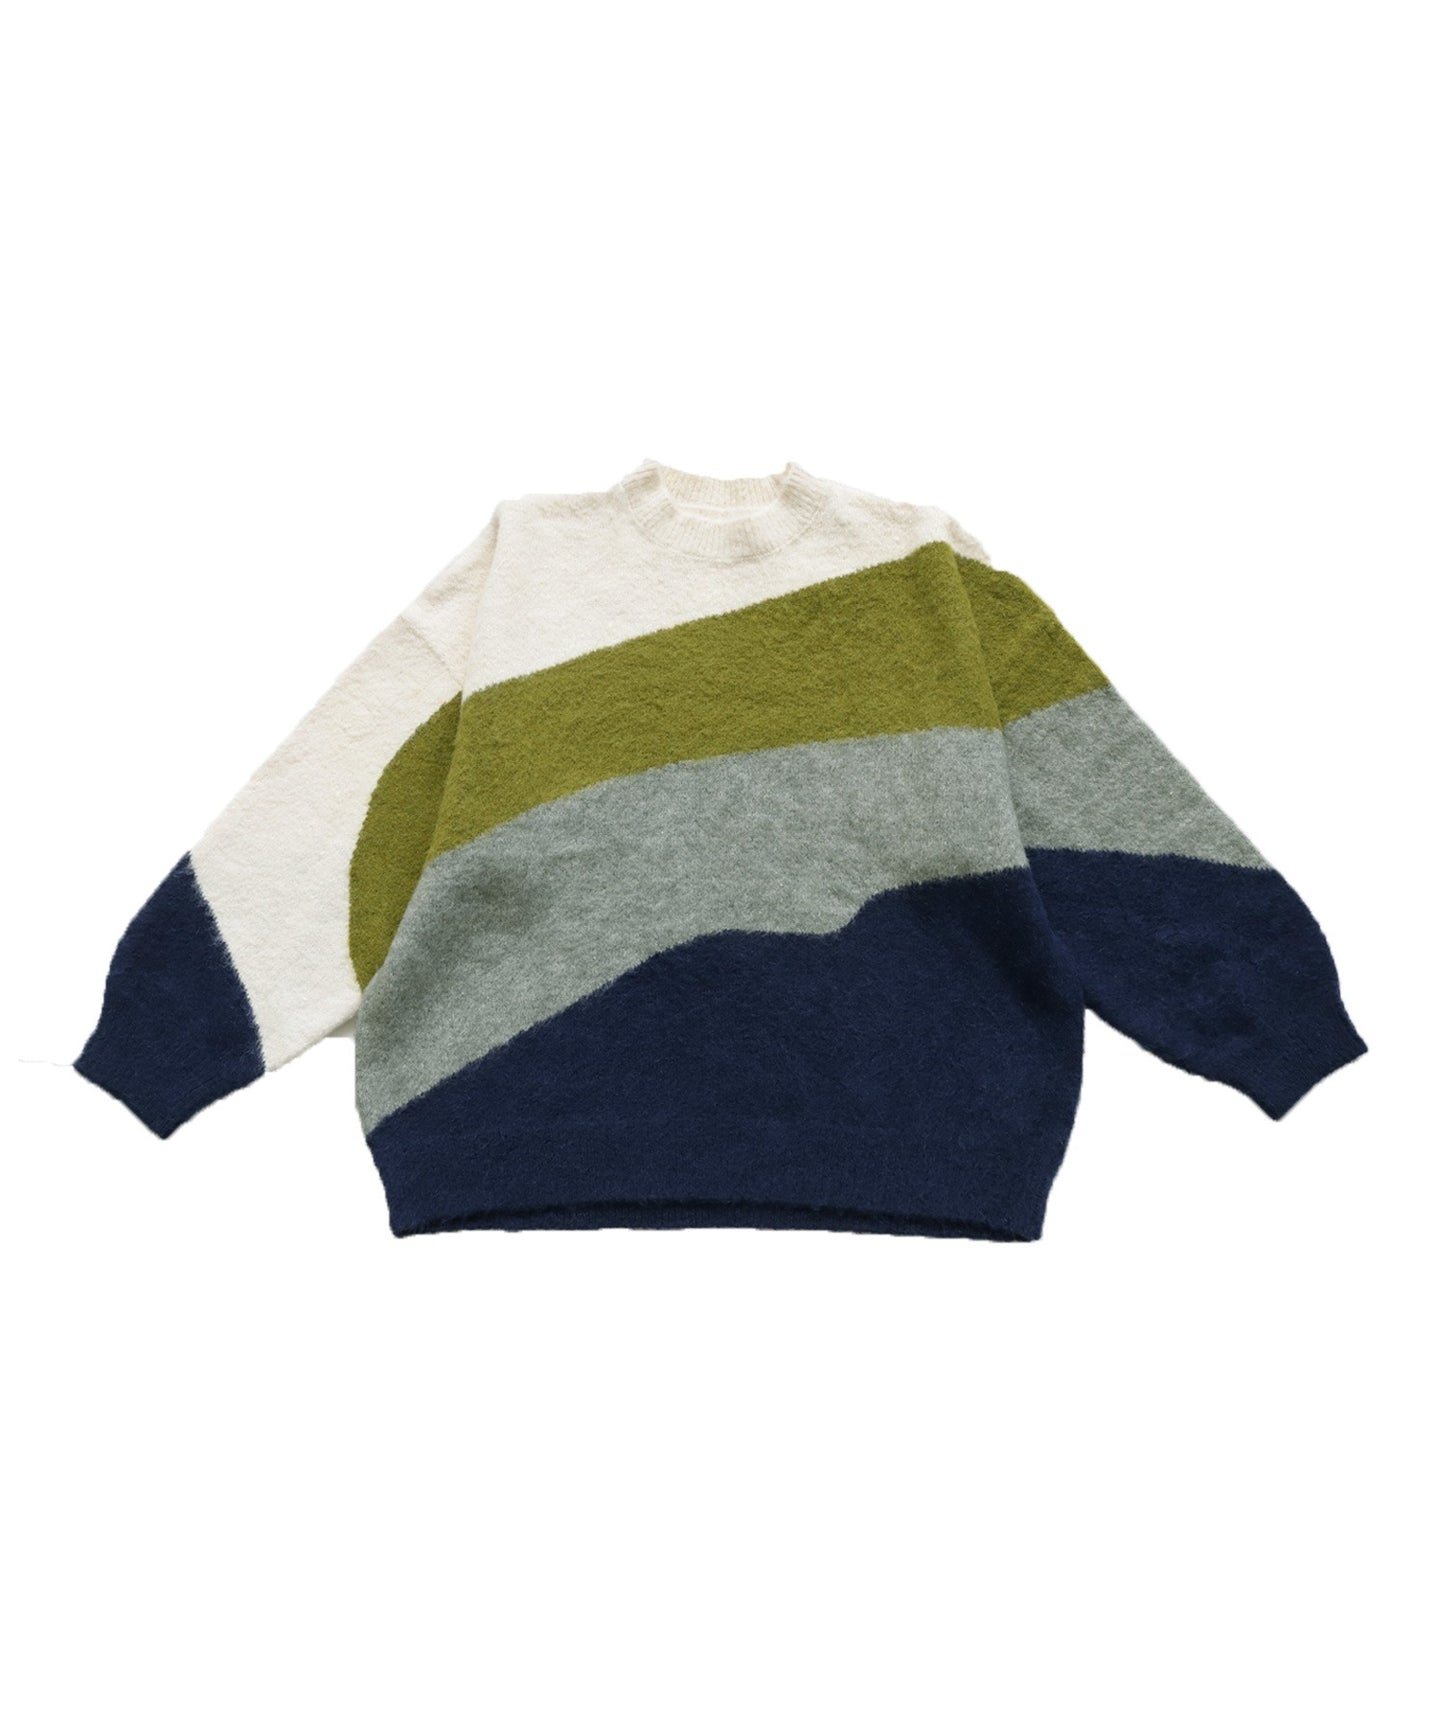 Color Scheme Design Knit Men's